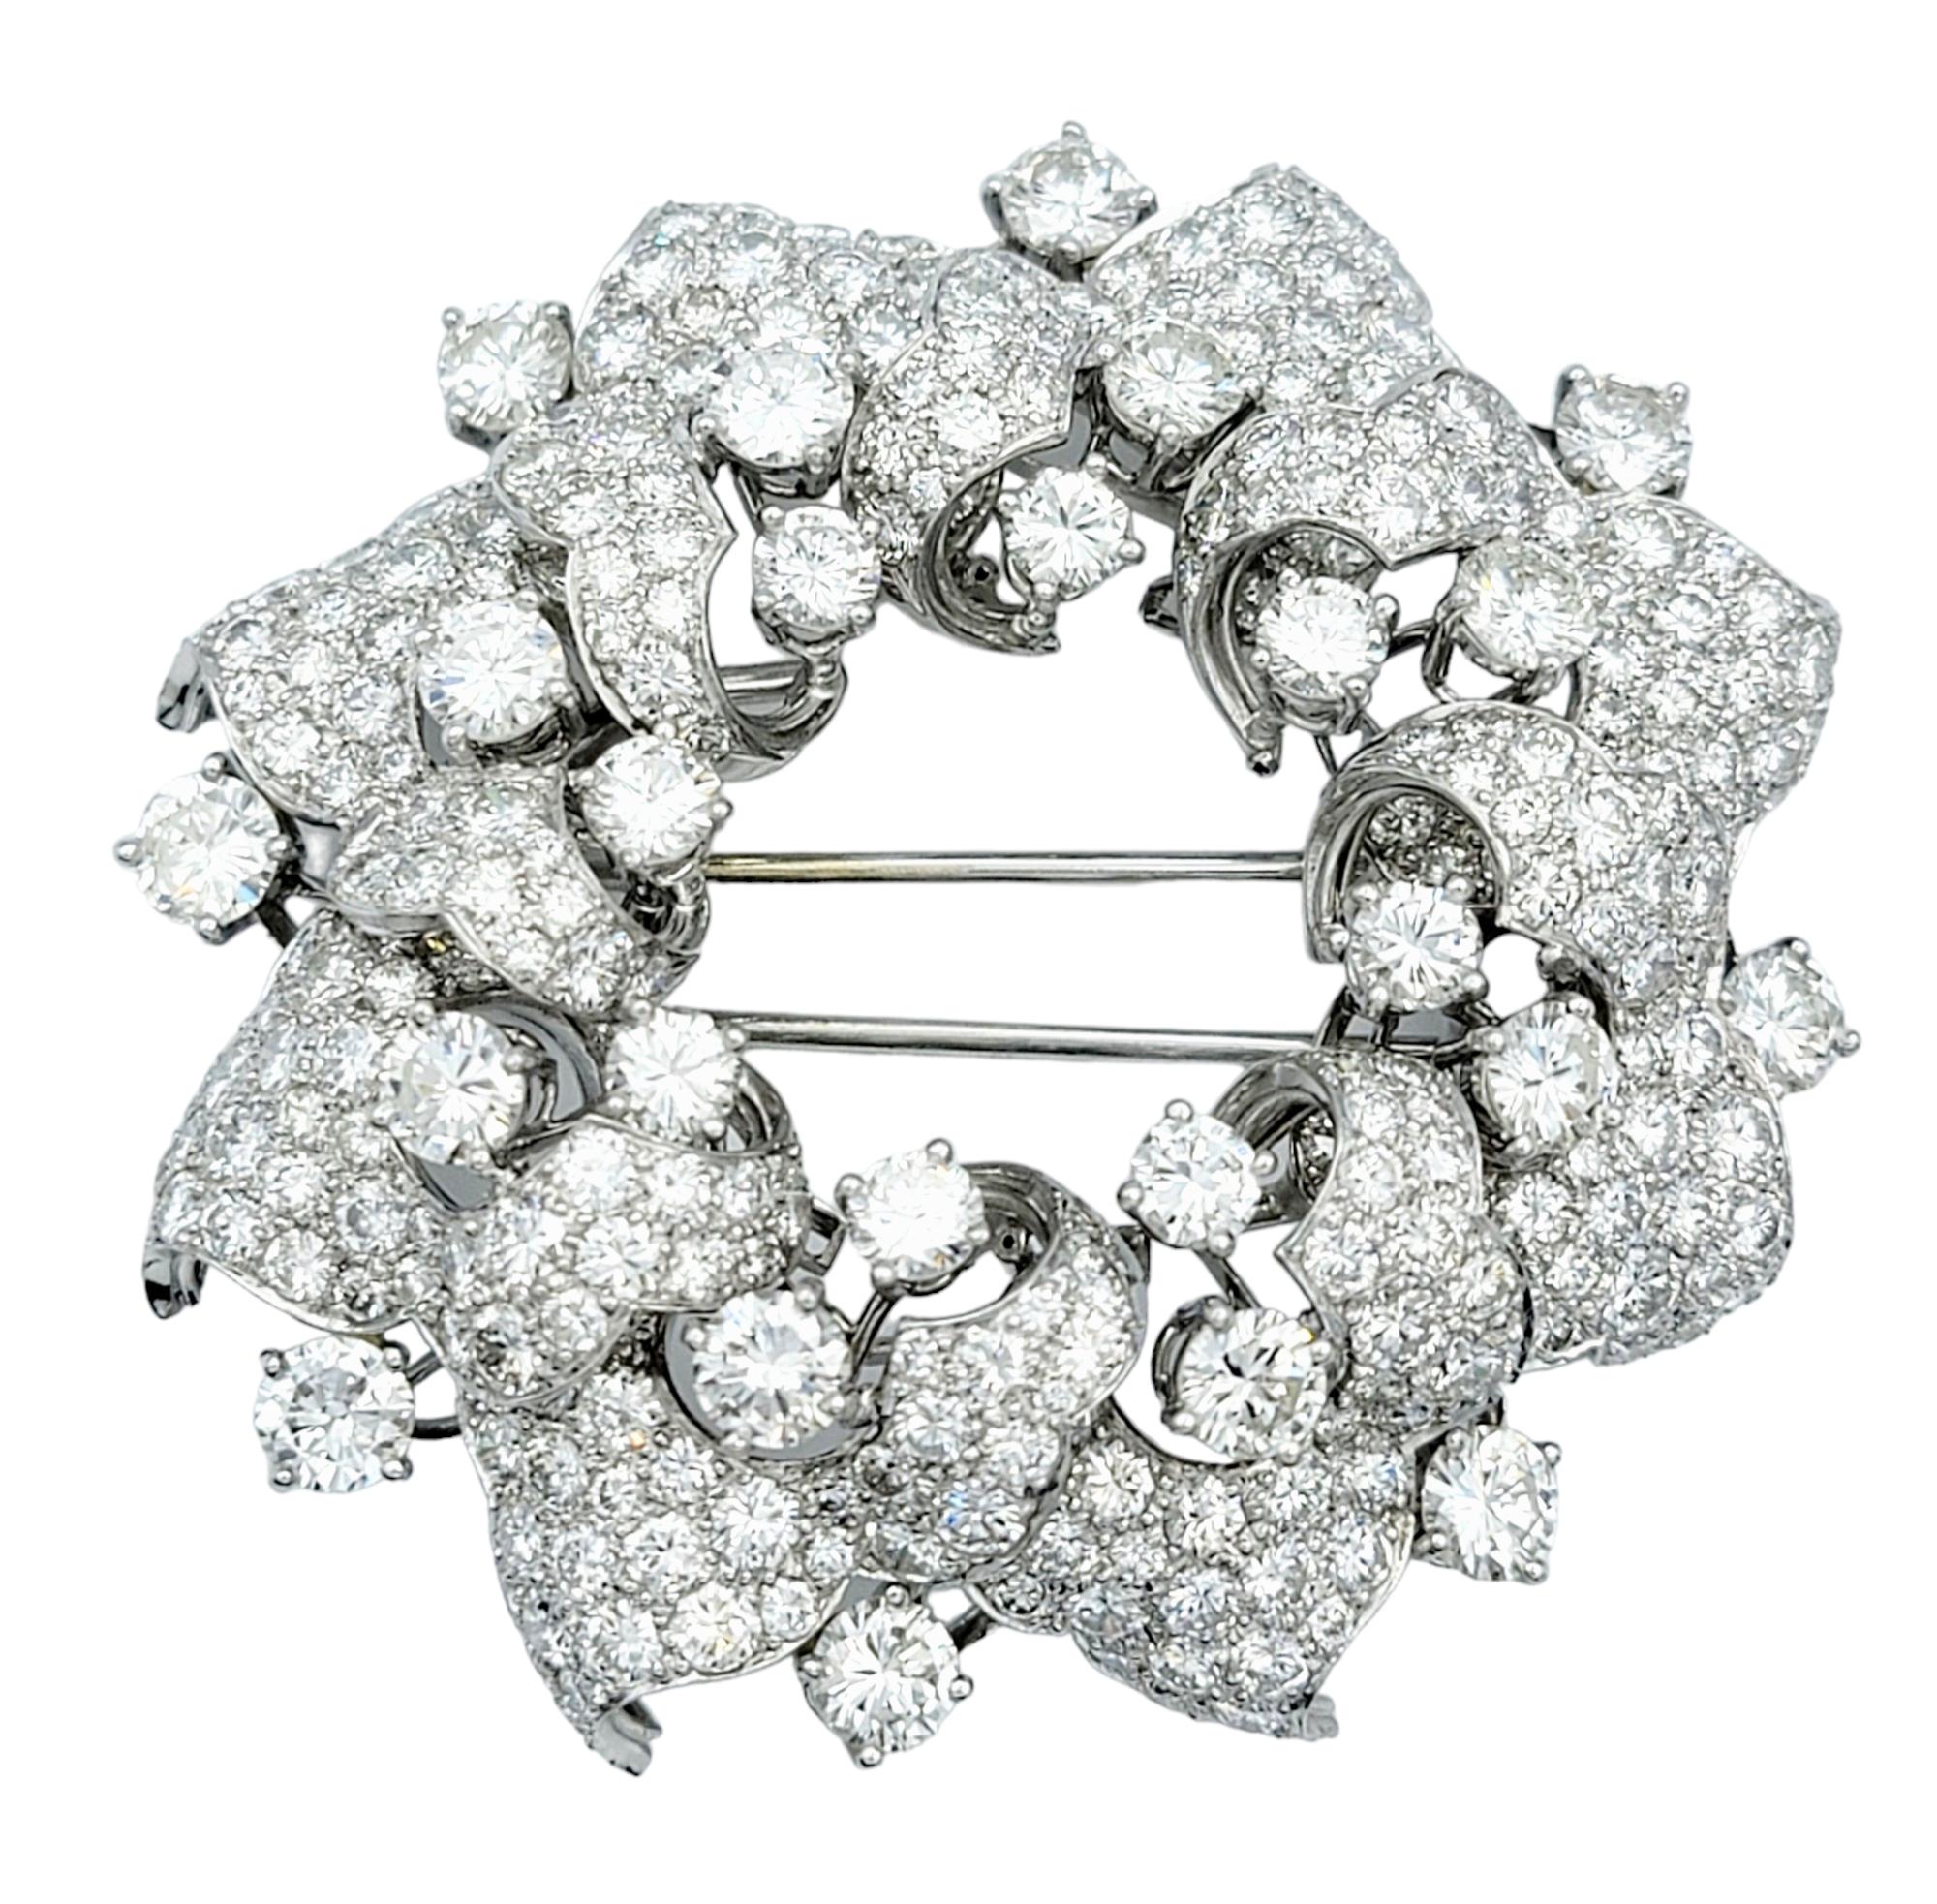 Cette magnifique broche en forme de couronne, sertie dans un luxueux platine, est une pièce époustouflante et opulente qui respire l'élégance intemporelle. Toute la surface de la couronne est recouverte de diamants de différentes tailles, créant